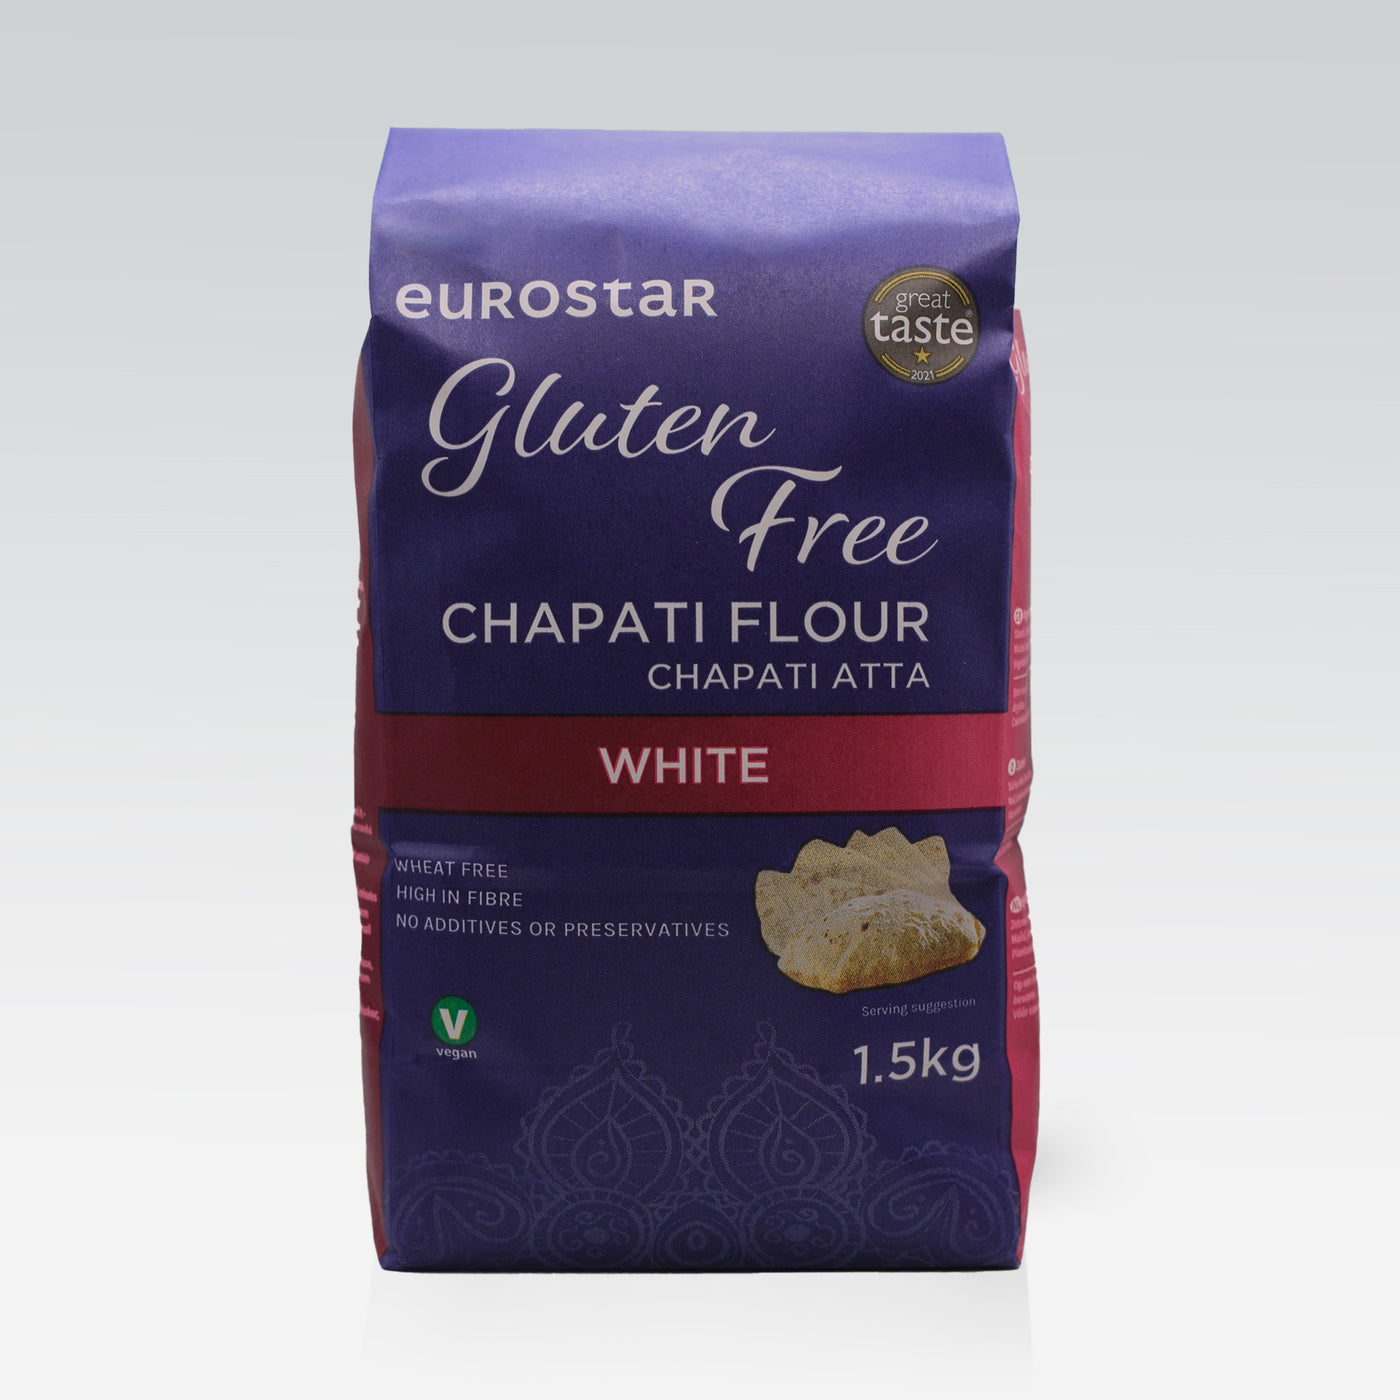 Eurostar Gluten Free White Chapati Flour